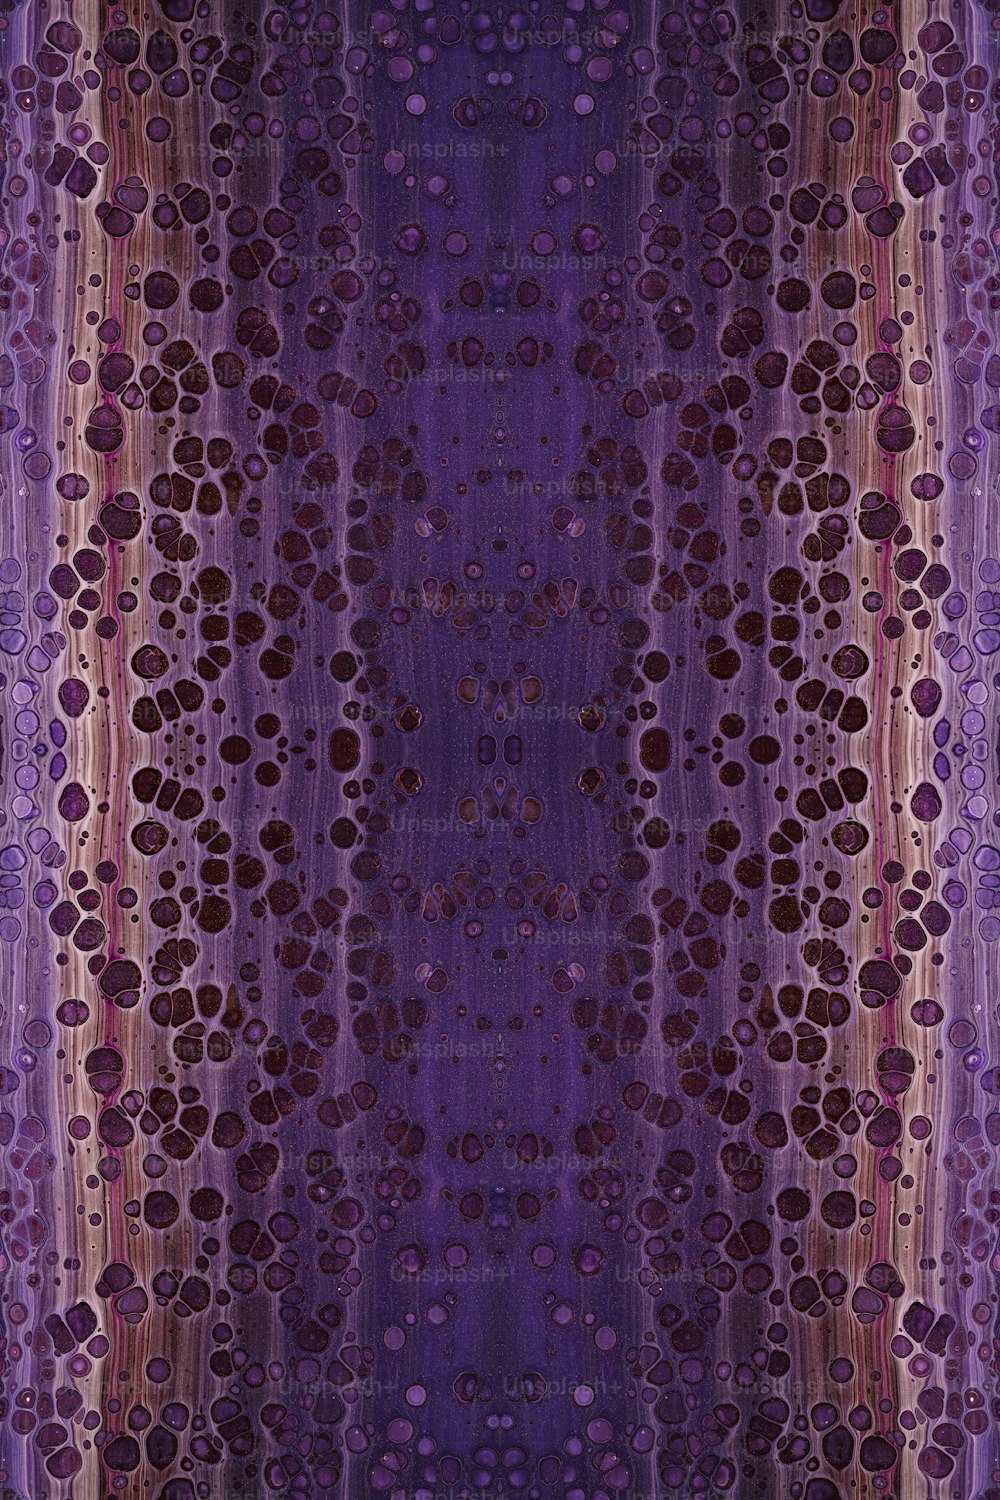 ein violetter Hintergrund mit Kreisen und Linien